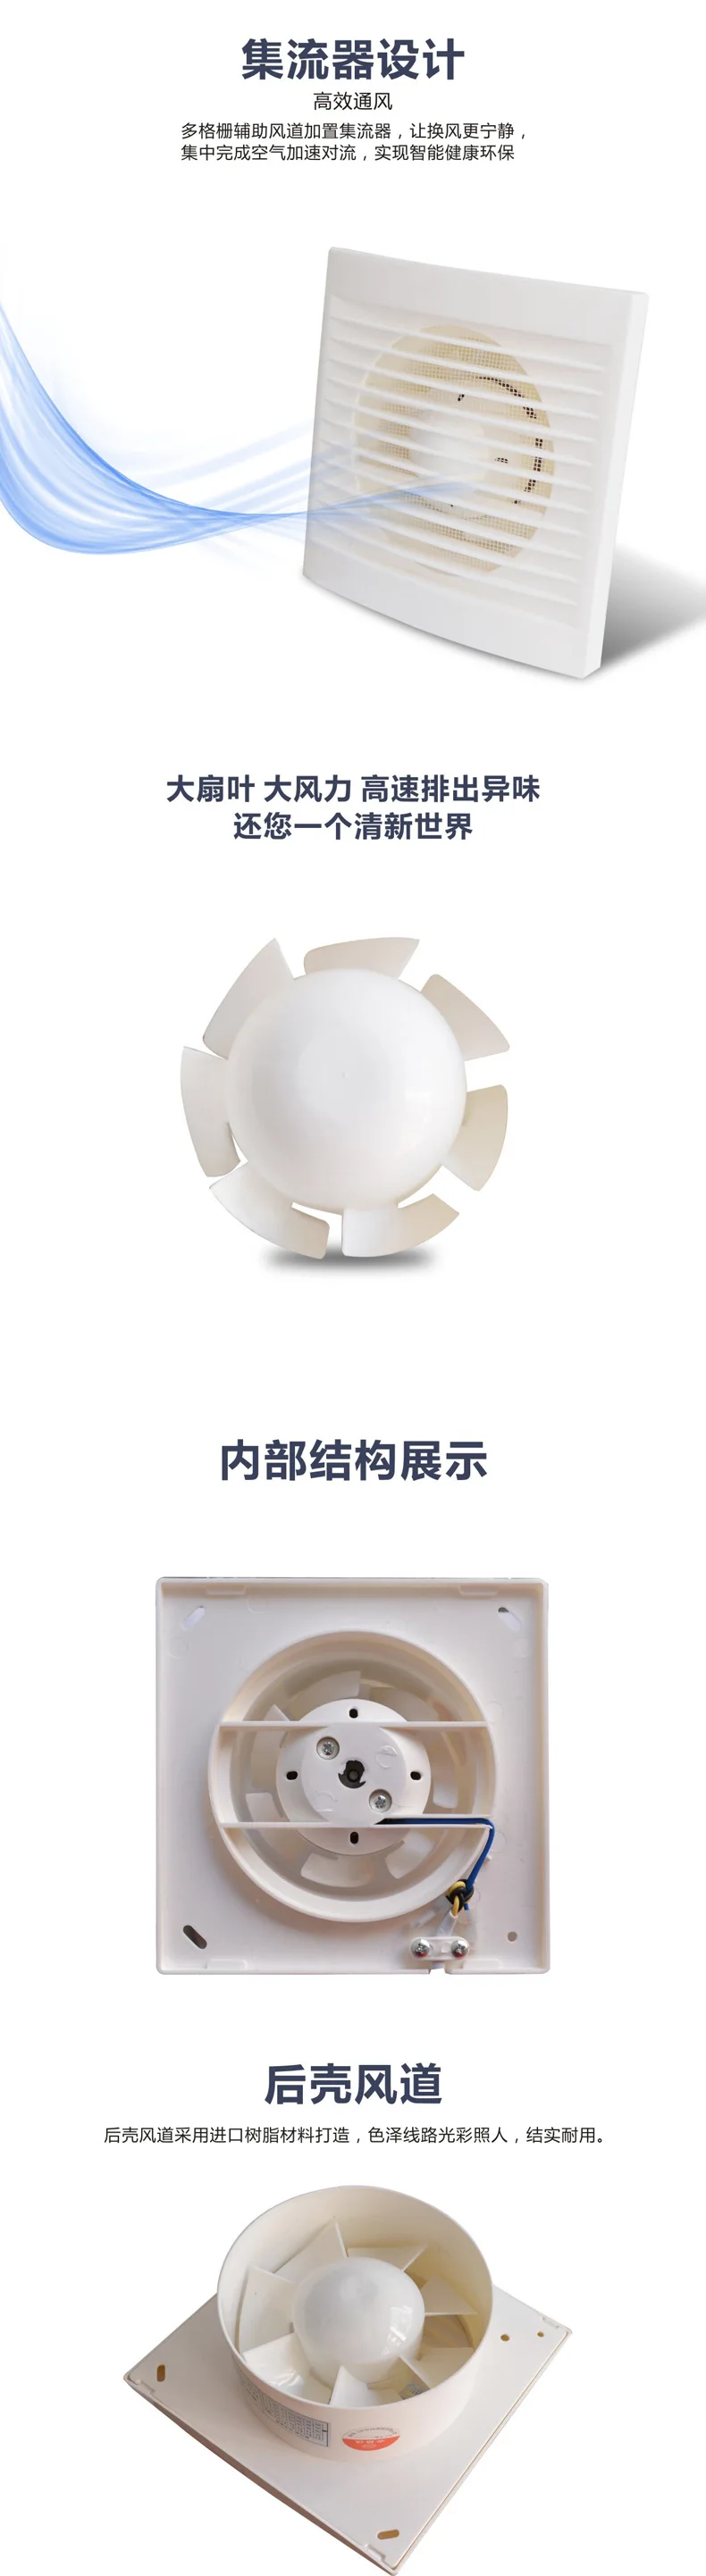 12 Вт 220 В белый подвесной настенный стеклянный вентилятор, вытяжной вентилятор для туалета, ванной, кухни, размер отверстия 110x110 мм